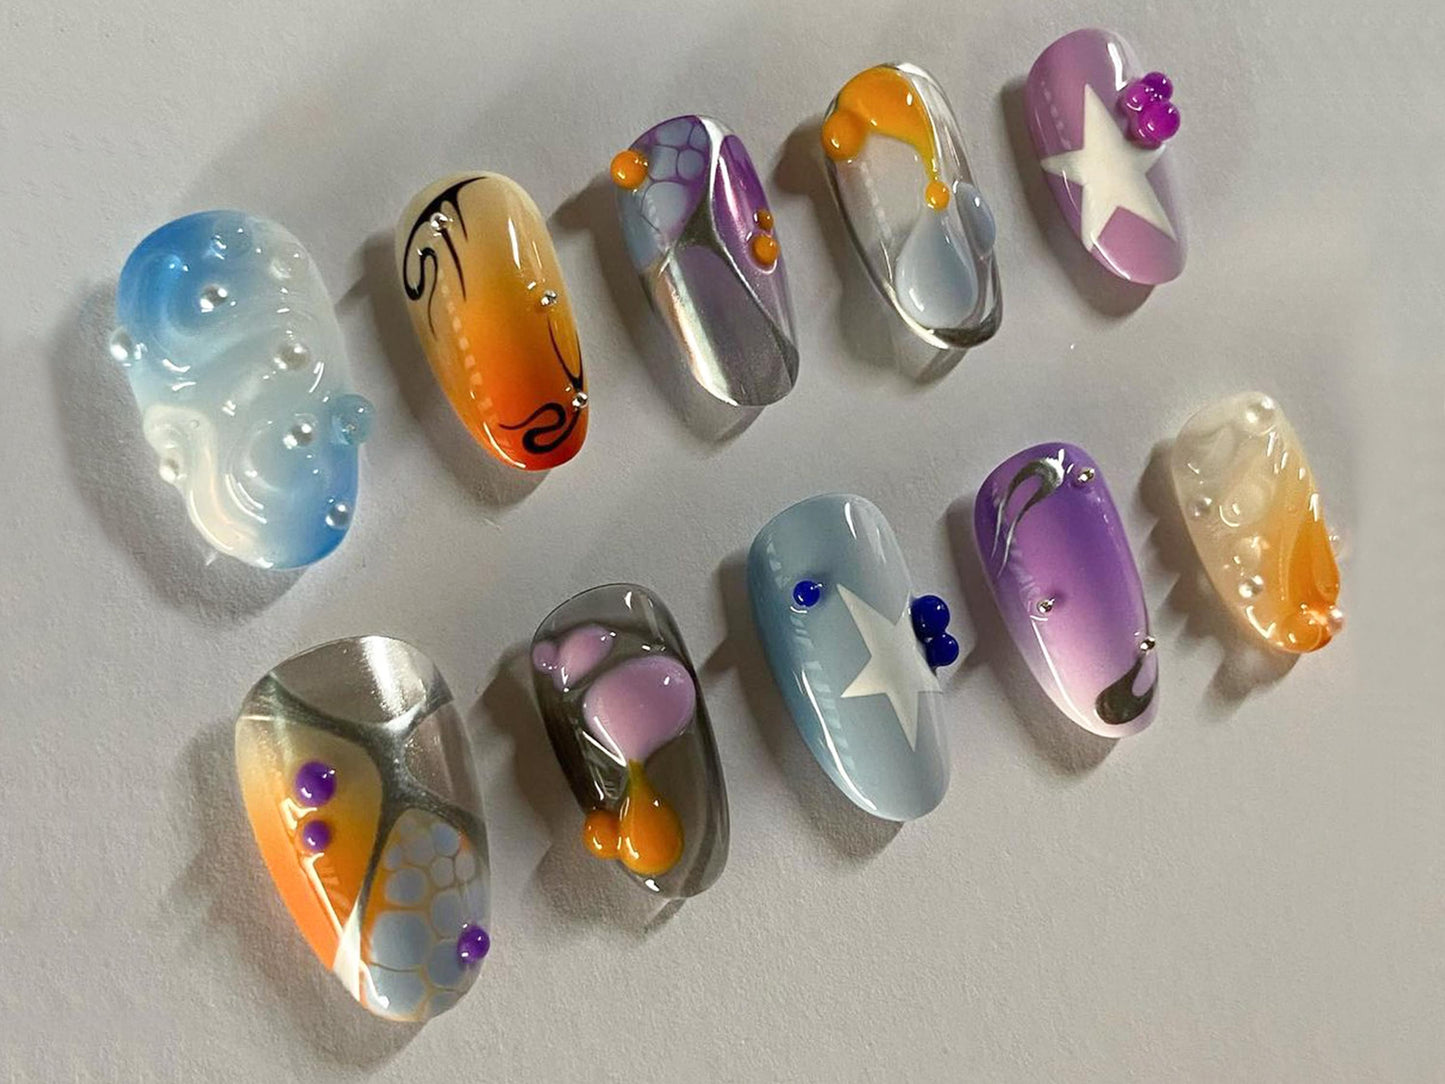 3D Gel Nail Set | Y2k Nails with Vibrant Colors | 3D Gel Press On Nails | Unique Nail Design | JT245